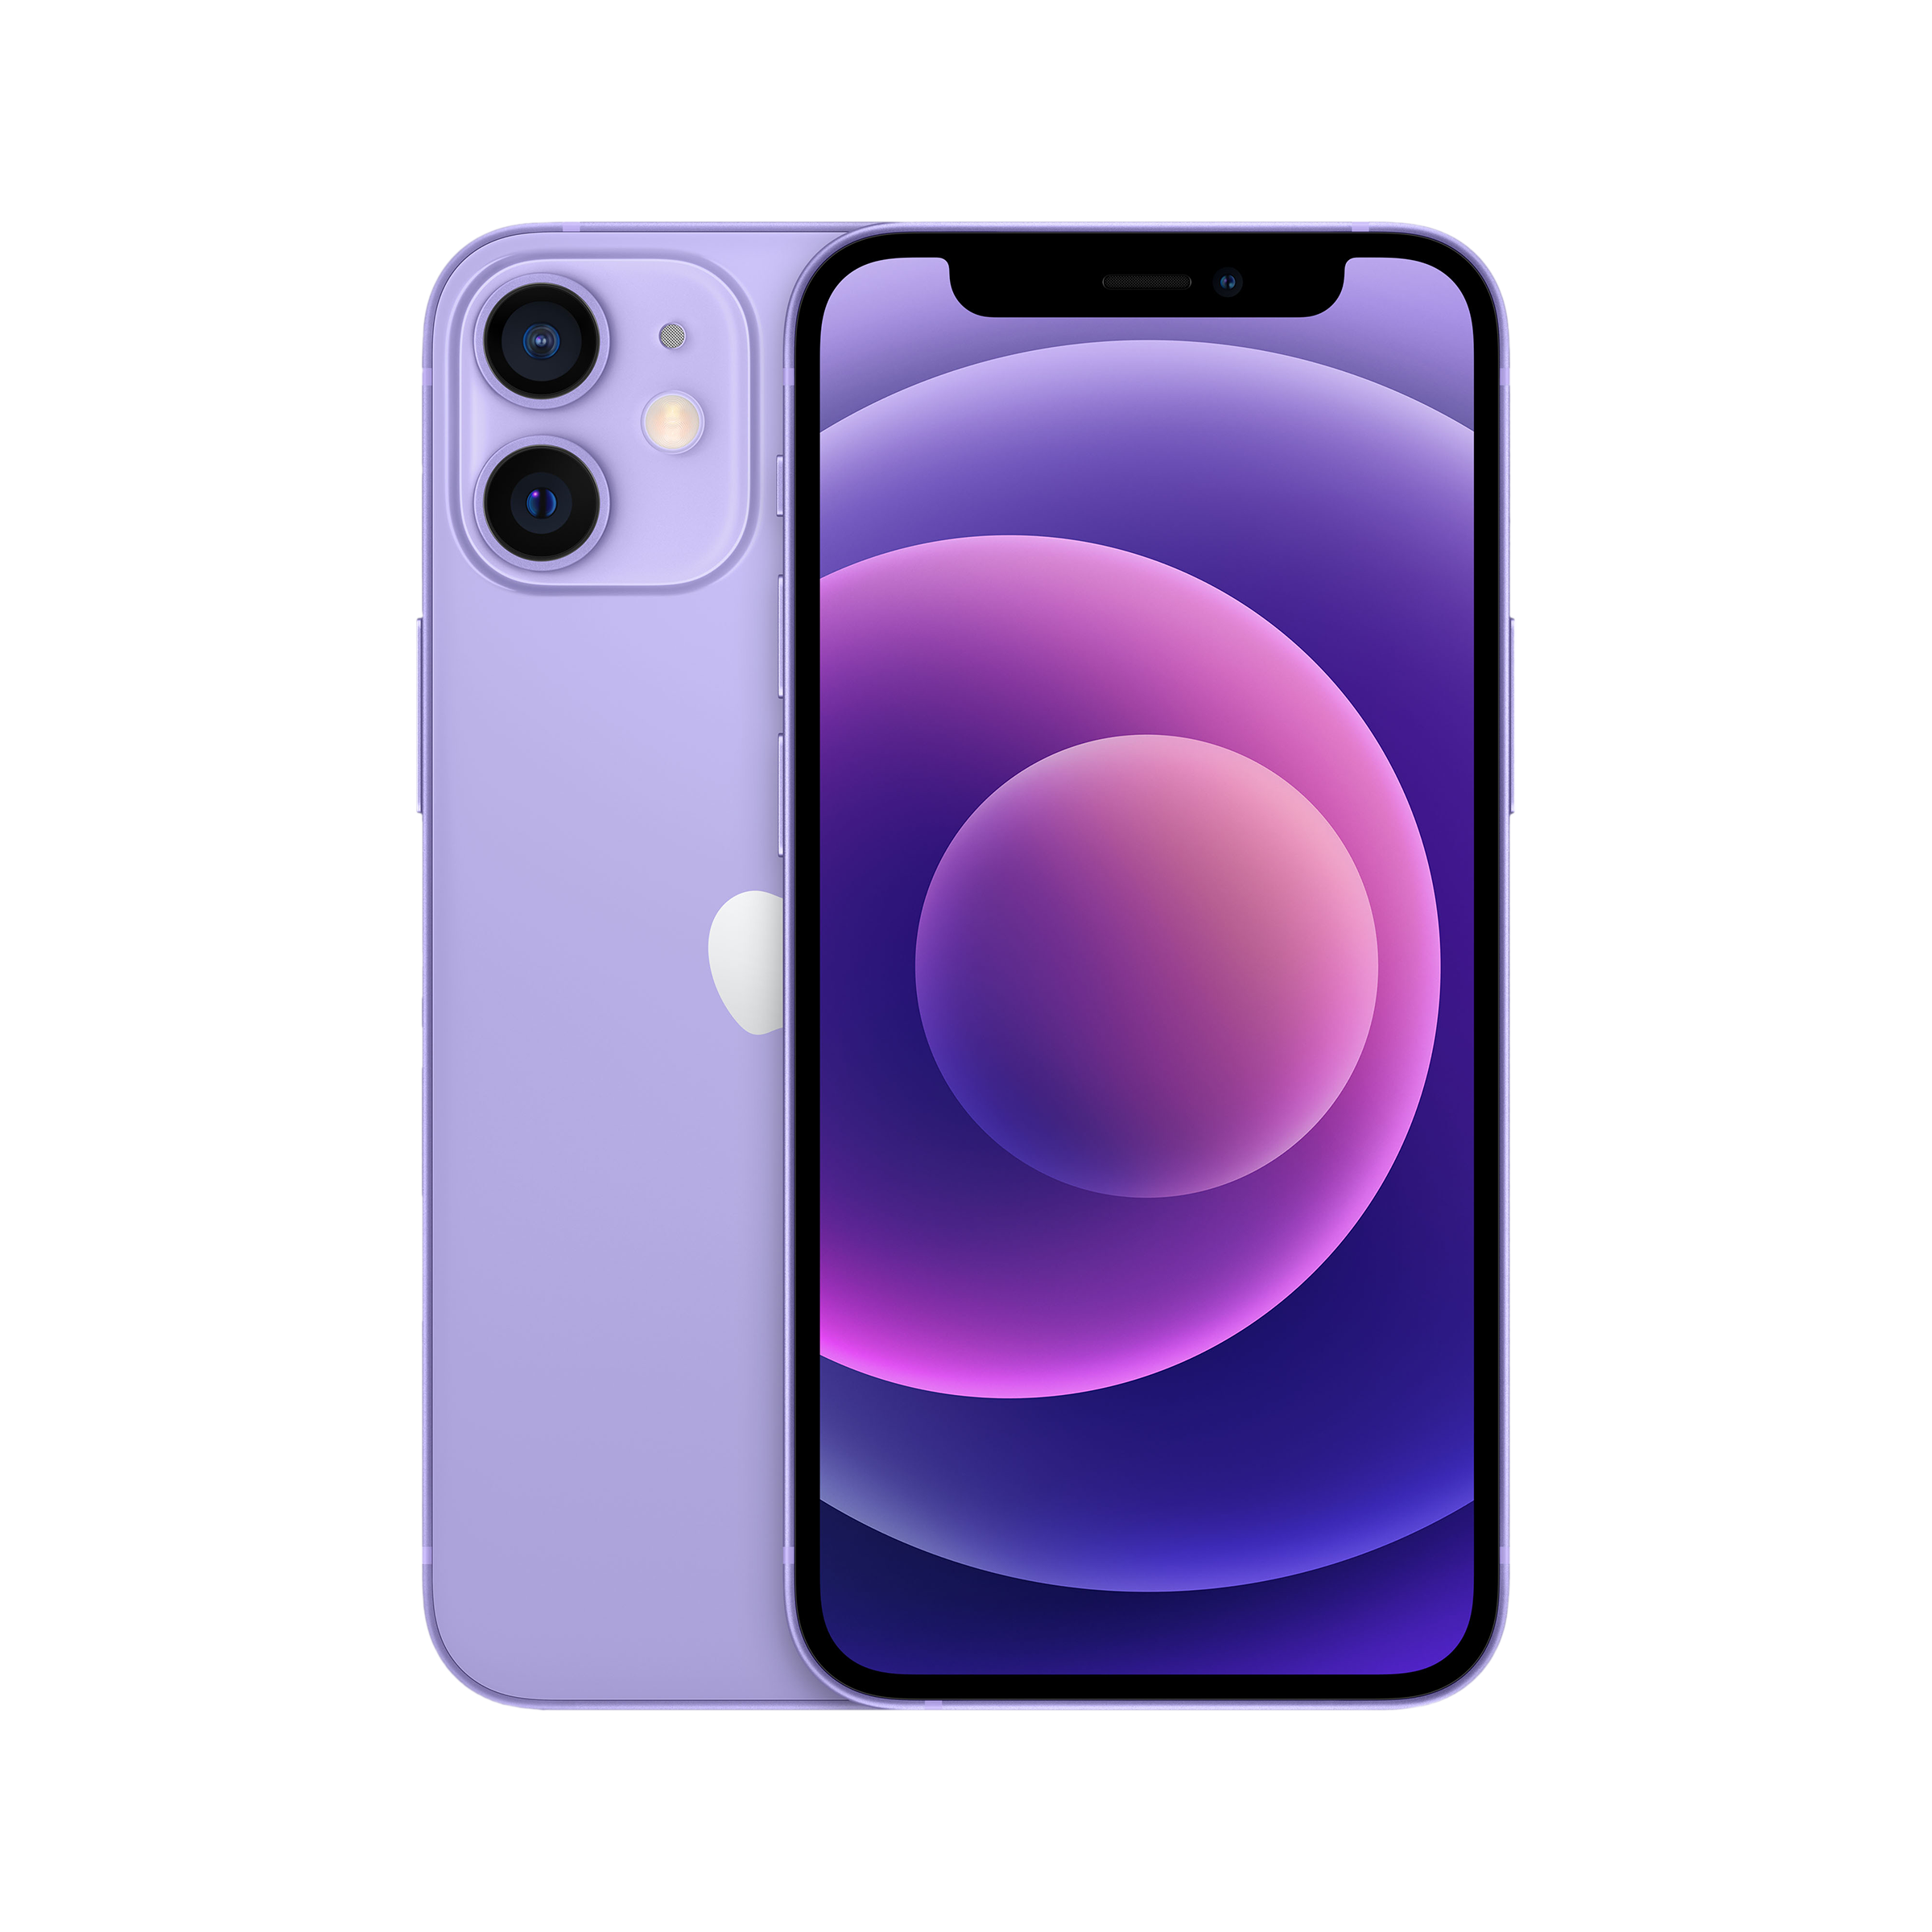 Apple iPhone 12 Mini (64GB, Purple)